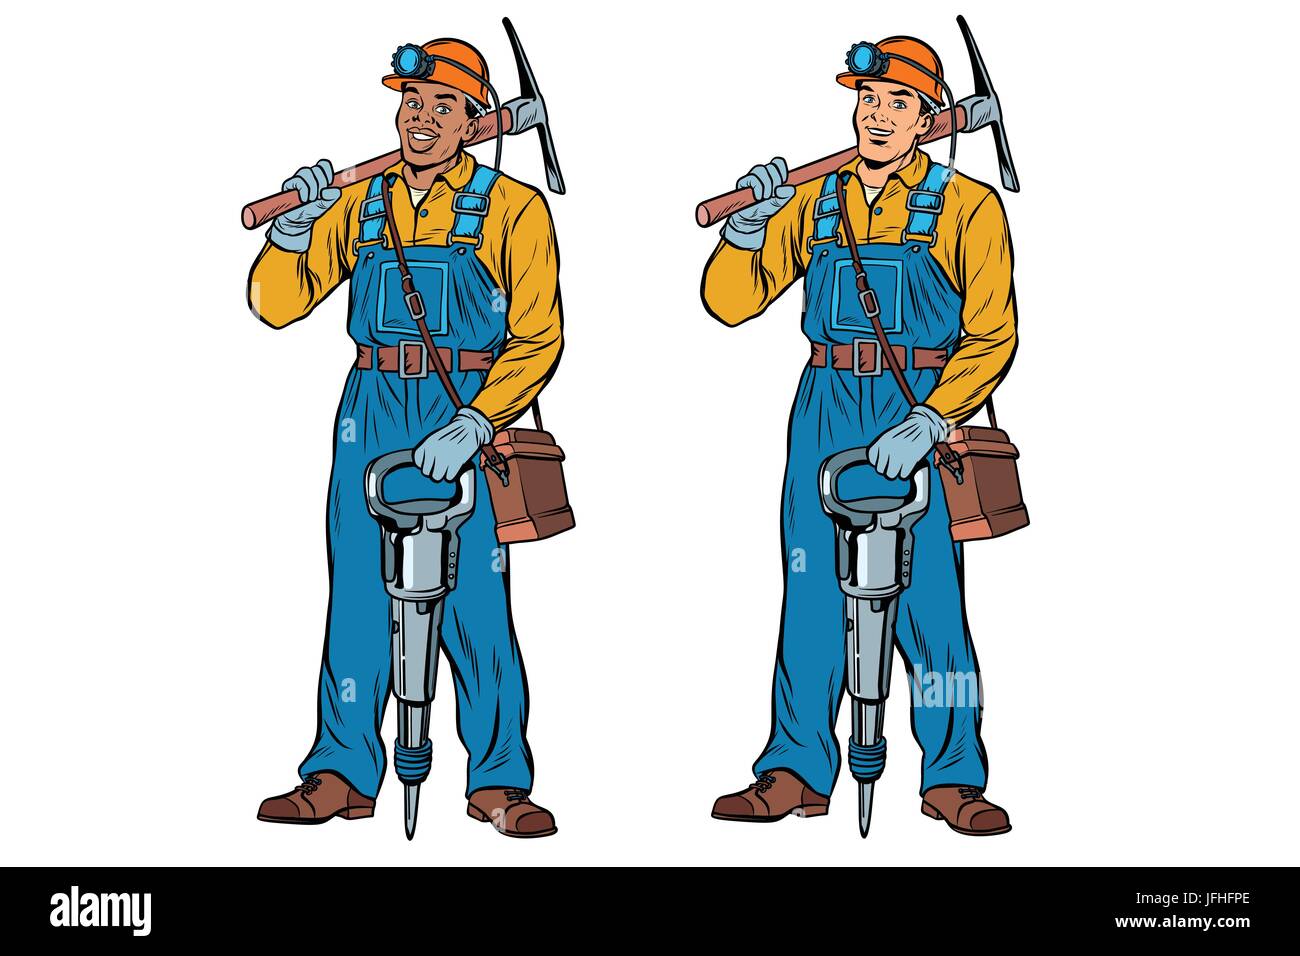 Afrikanische und kaukasischen Bergleute mit Presslufthammer Spitzhacke. Pop-Art-Retro-Vektor-illustration Stock Vektor